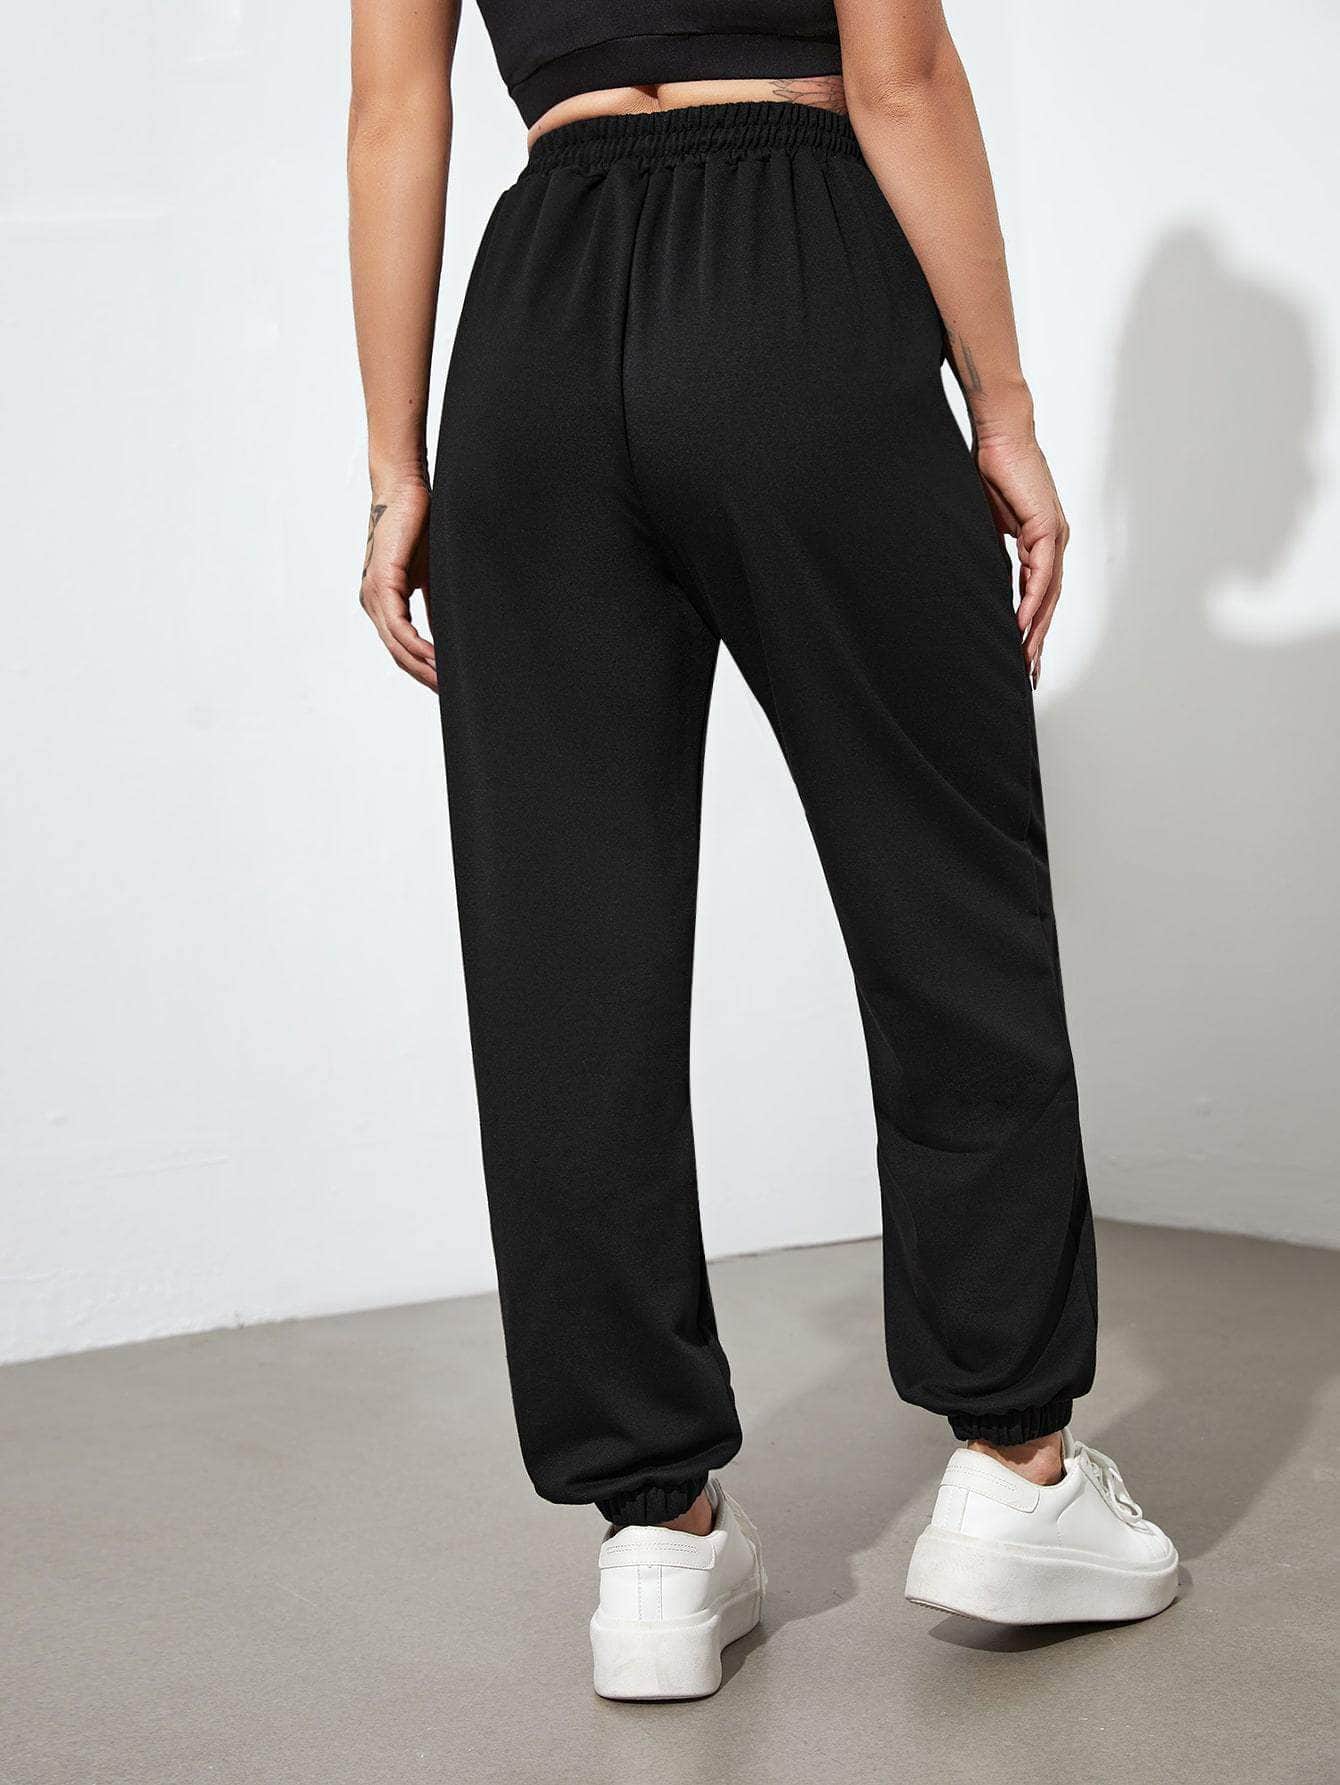 Negro / M Pantalones deportivos con cordón con bolsillos oblicuos unicolor